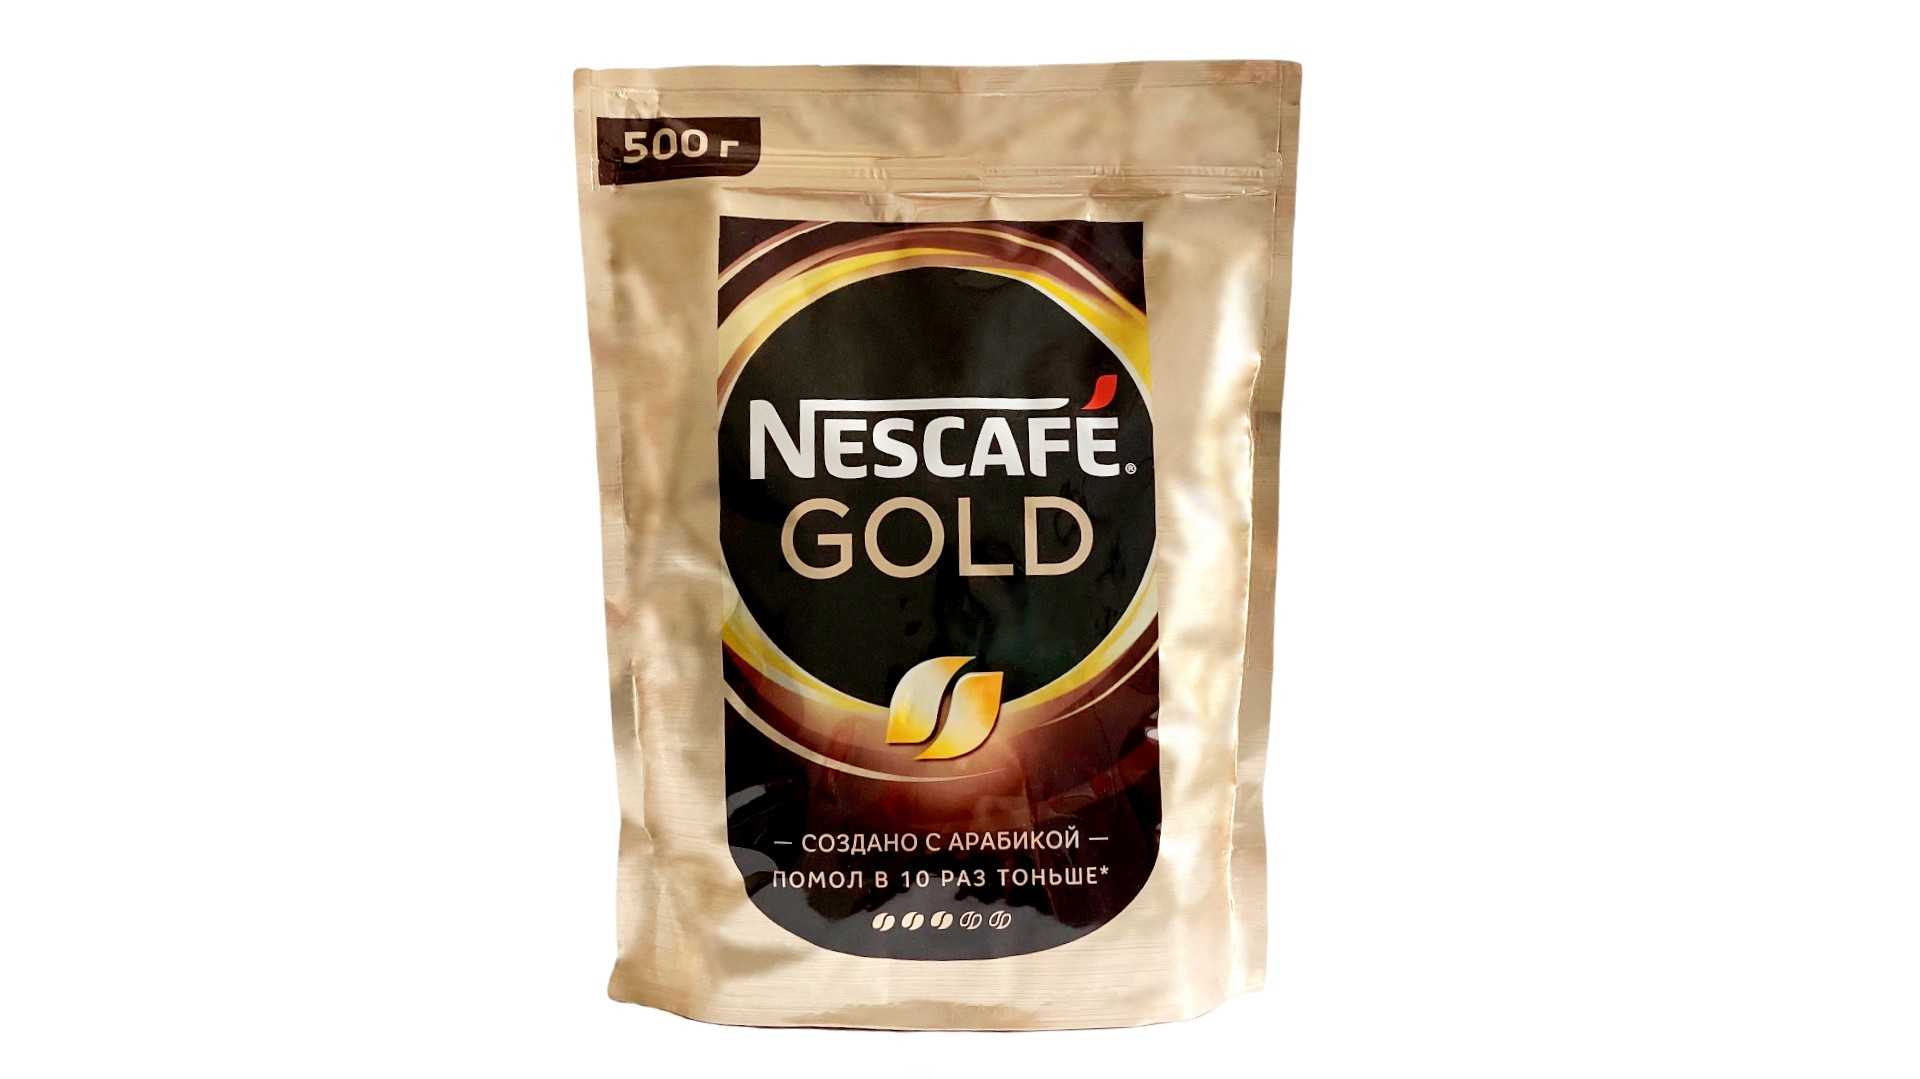 Купить кофе голд 500 гр. Кофе растворимый Нескафе Голд 500г сублимированный. Кофе Нескафе Голд 500г. Кофе Nescafe Gold пакет 500 гр. Кофе растворимый Нескафе Голд 500.